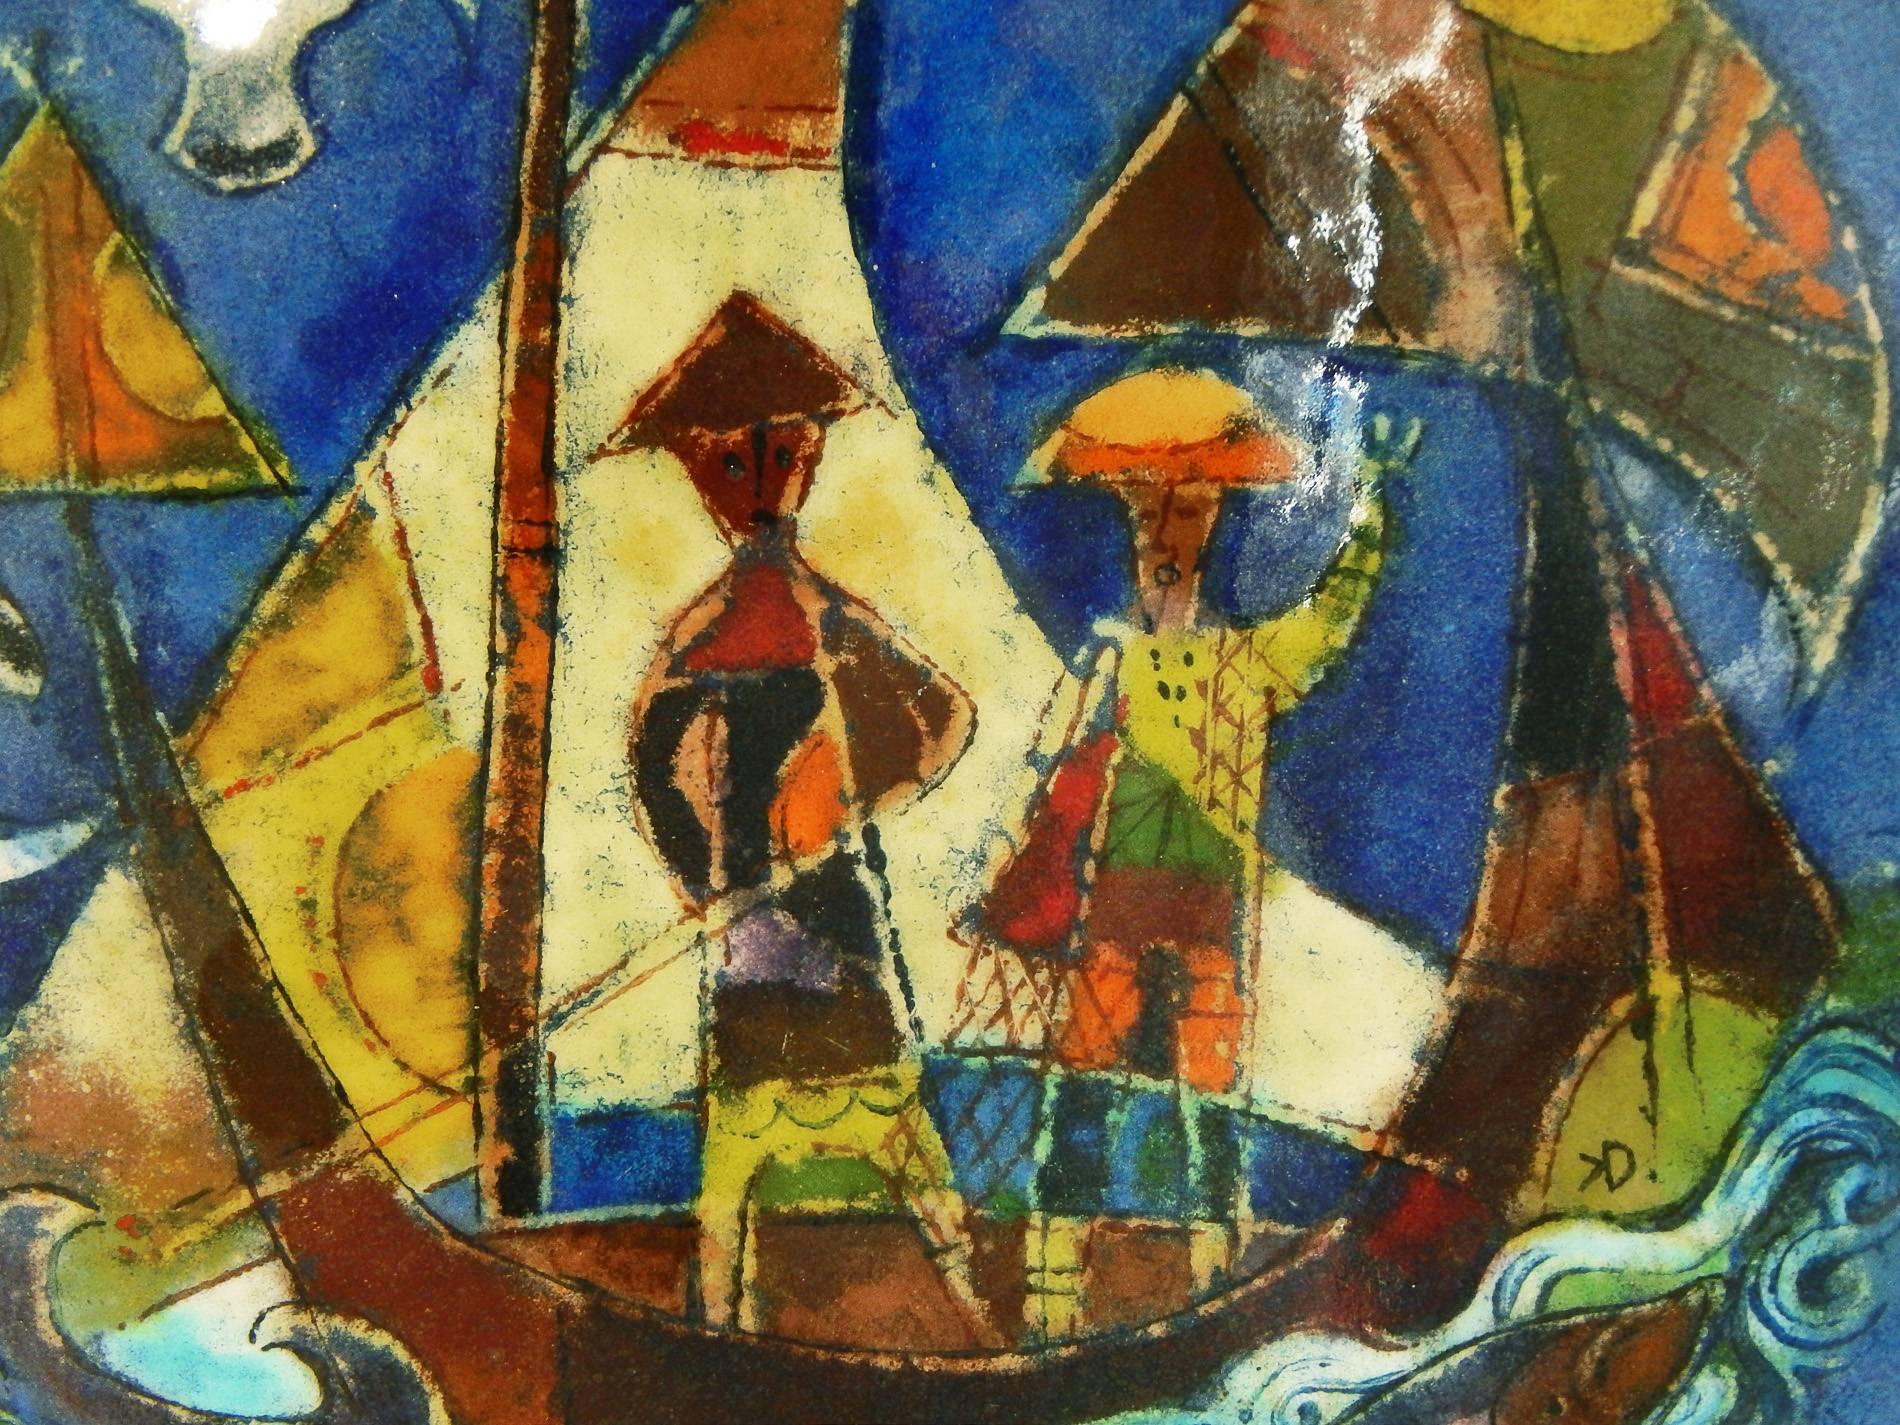 Cette grande coupe représente un voilier avec des mouettes au-dessus de la tête et des dauphins batifolant en dessous, dans une mer de bleus, d'ors, d'oranges et de verts superbes. Drerup a immigré d'Allemagne en Amérique en 1937, son activisme